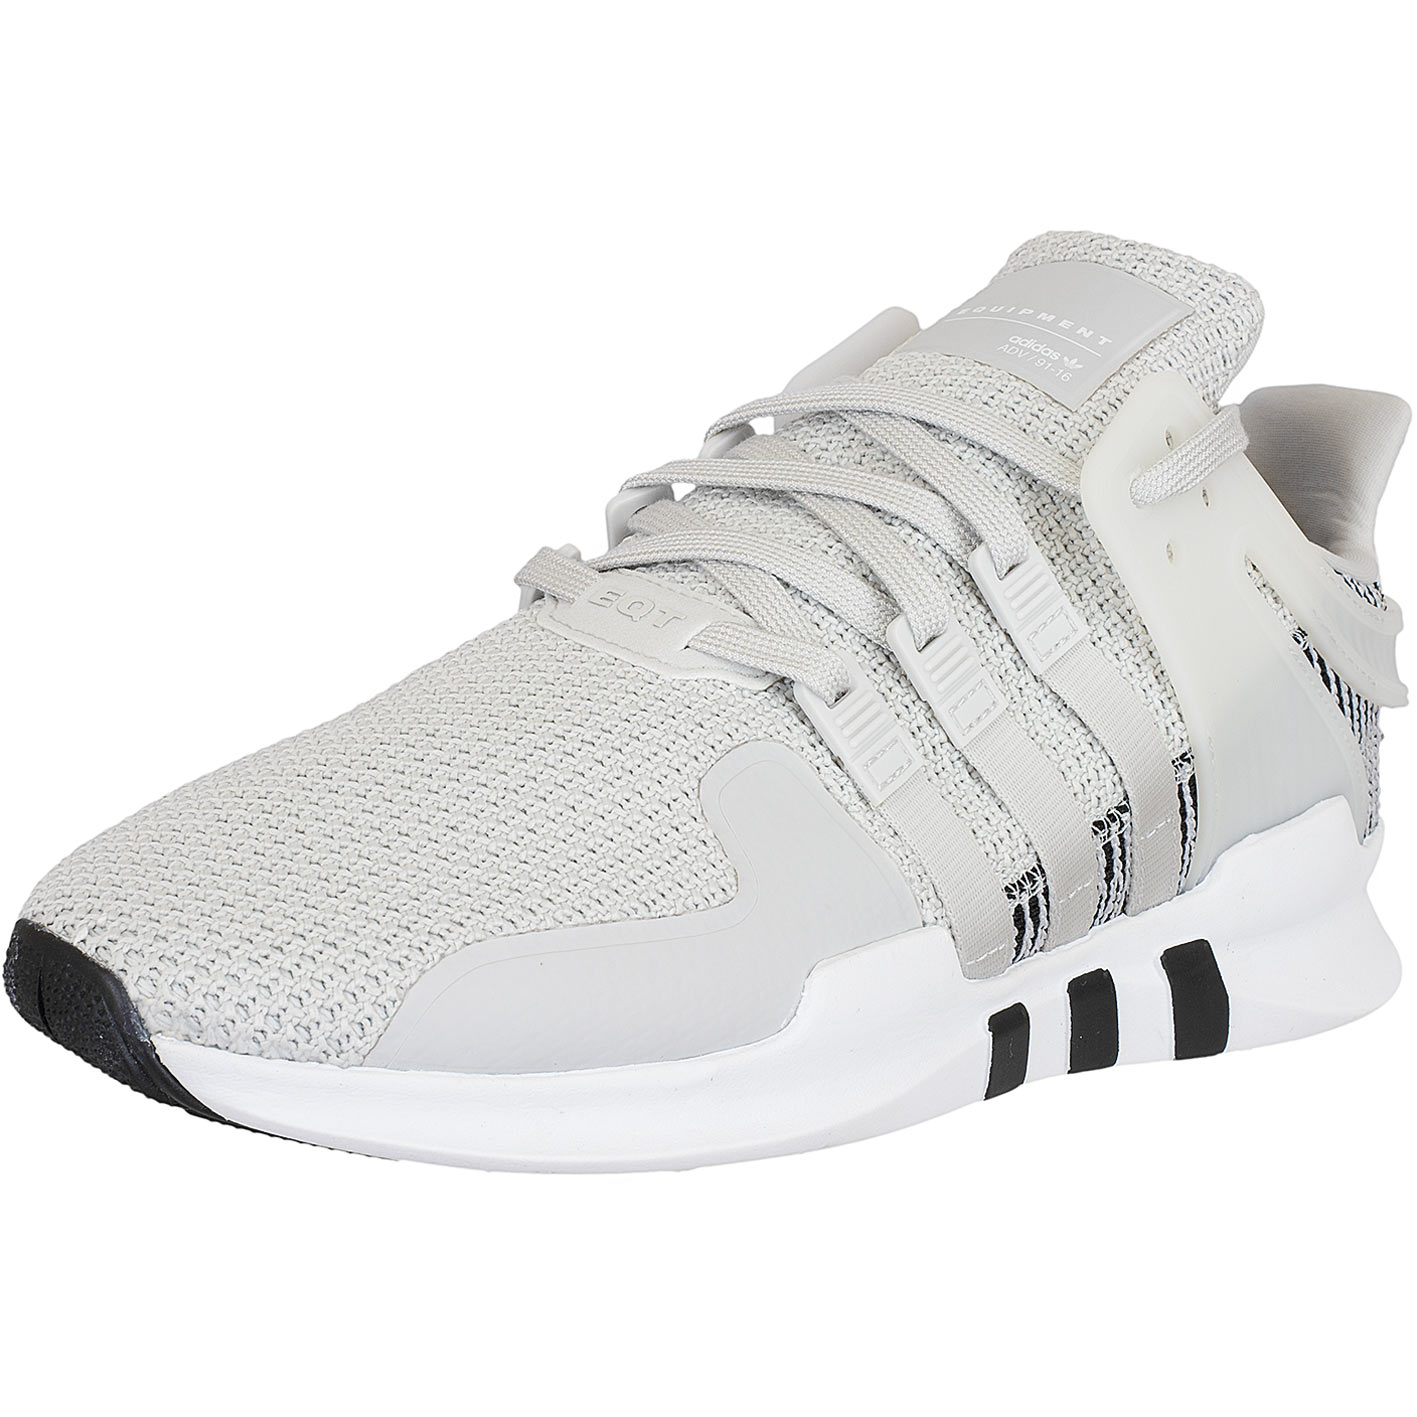 ☆ Adidas Originals Sneaker Equipment Support ADV weiß/grau - hier bestellen!